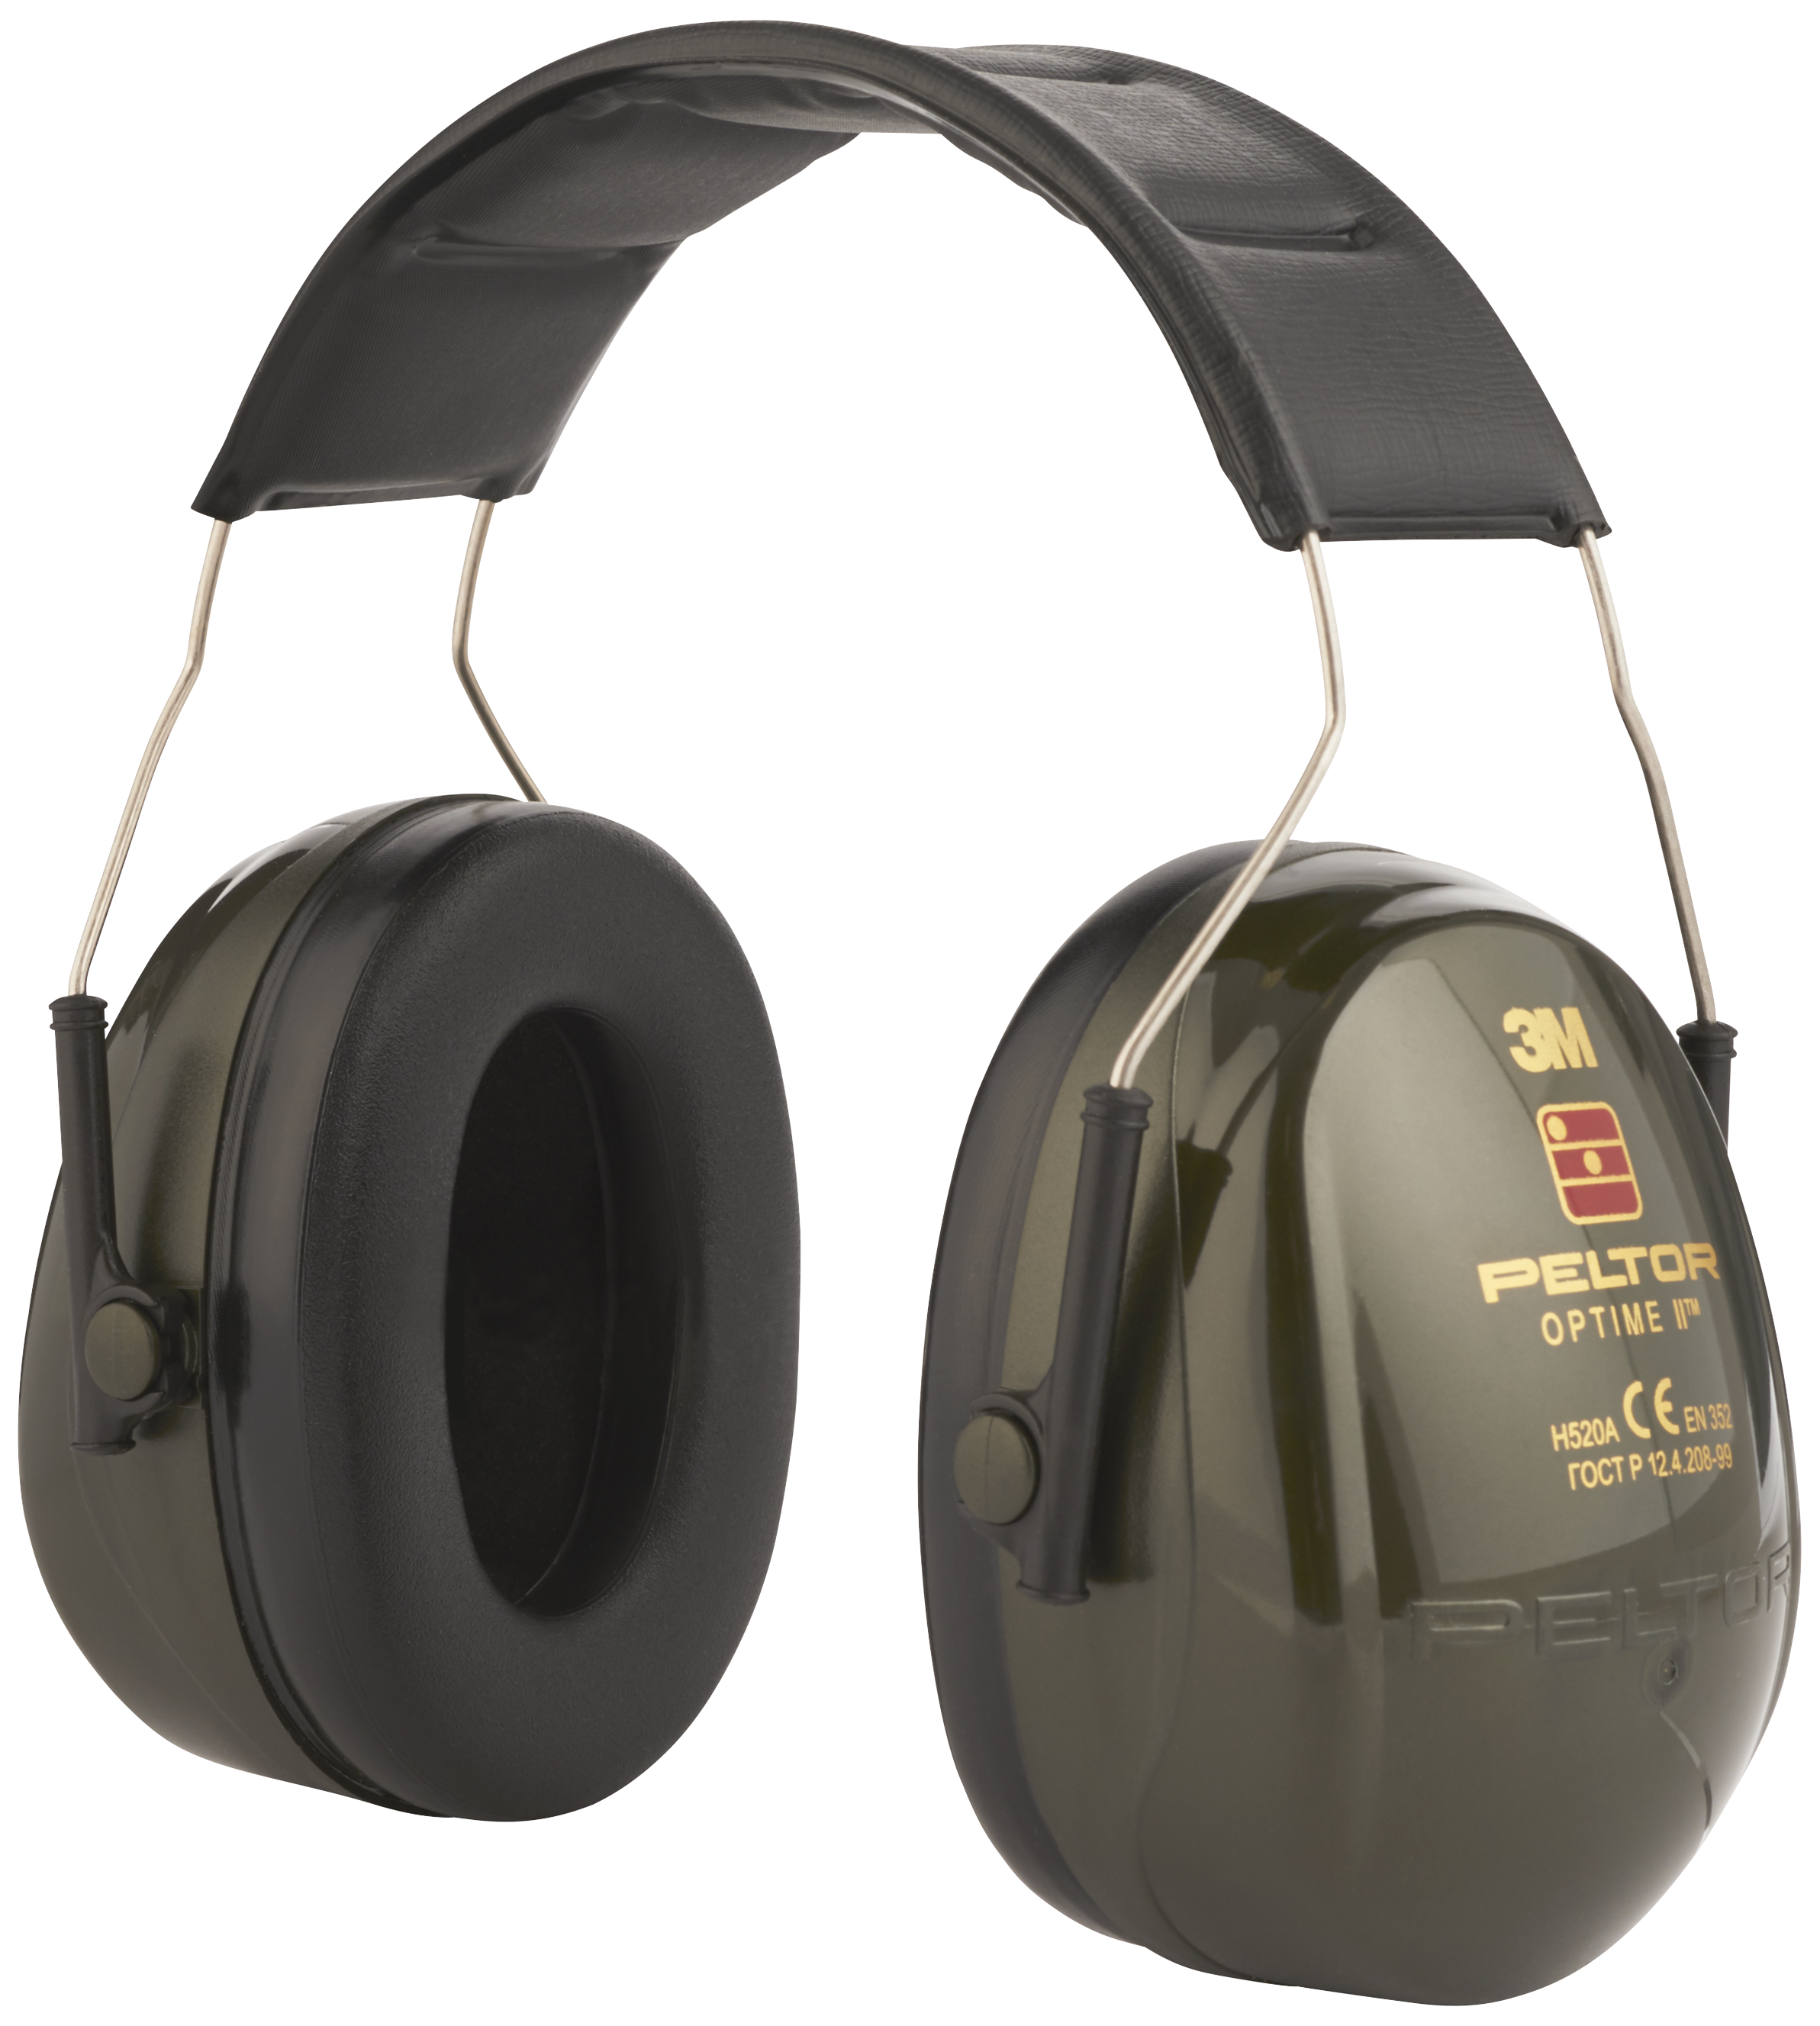 Peltor høreværn Optime II H520A 327164